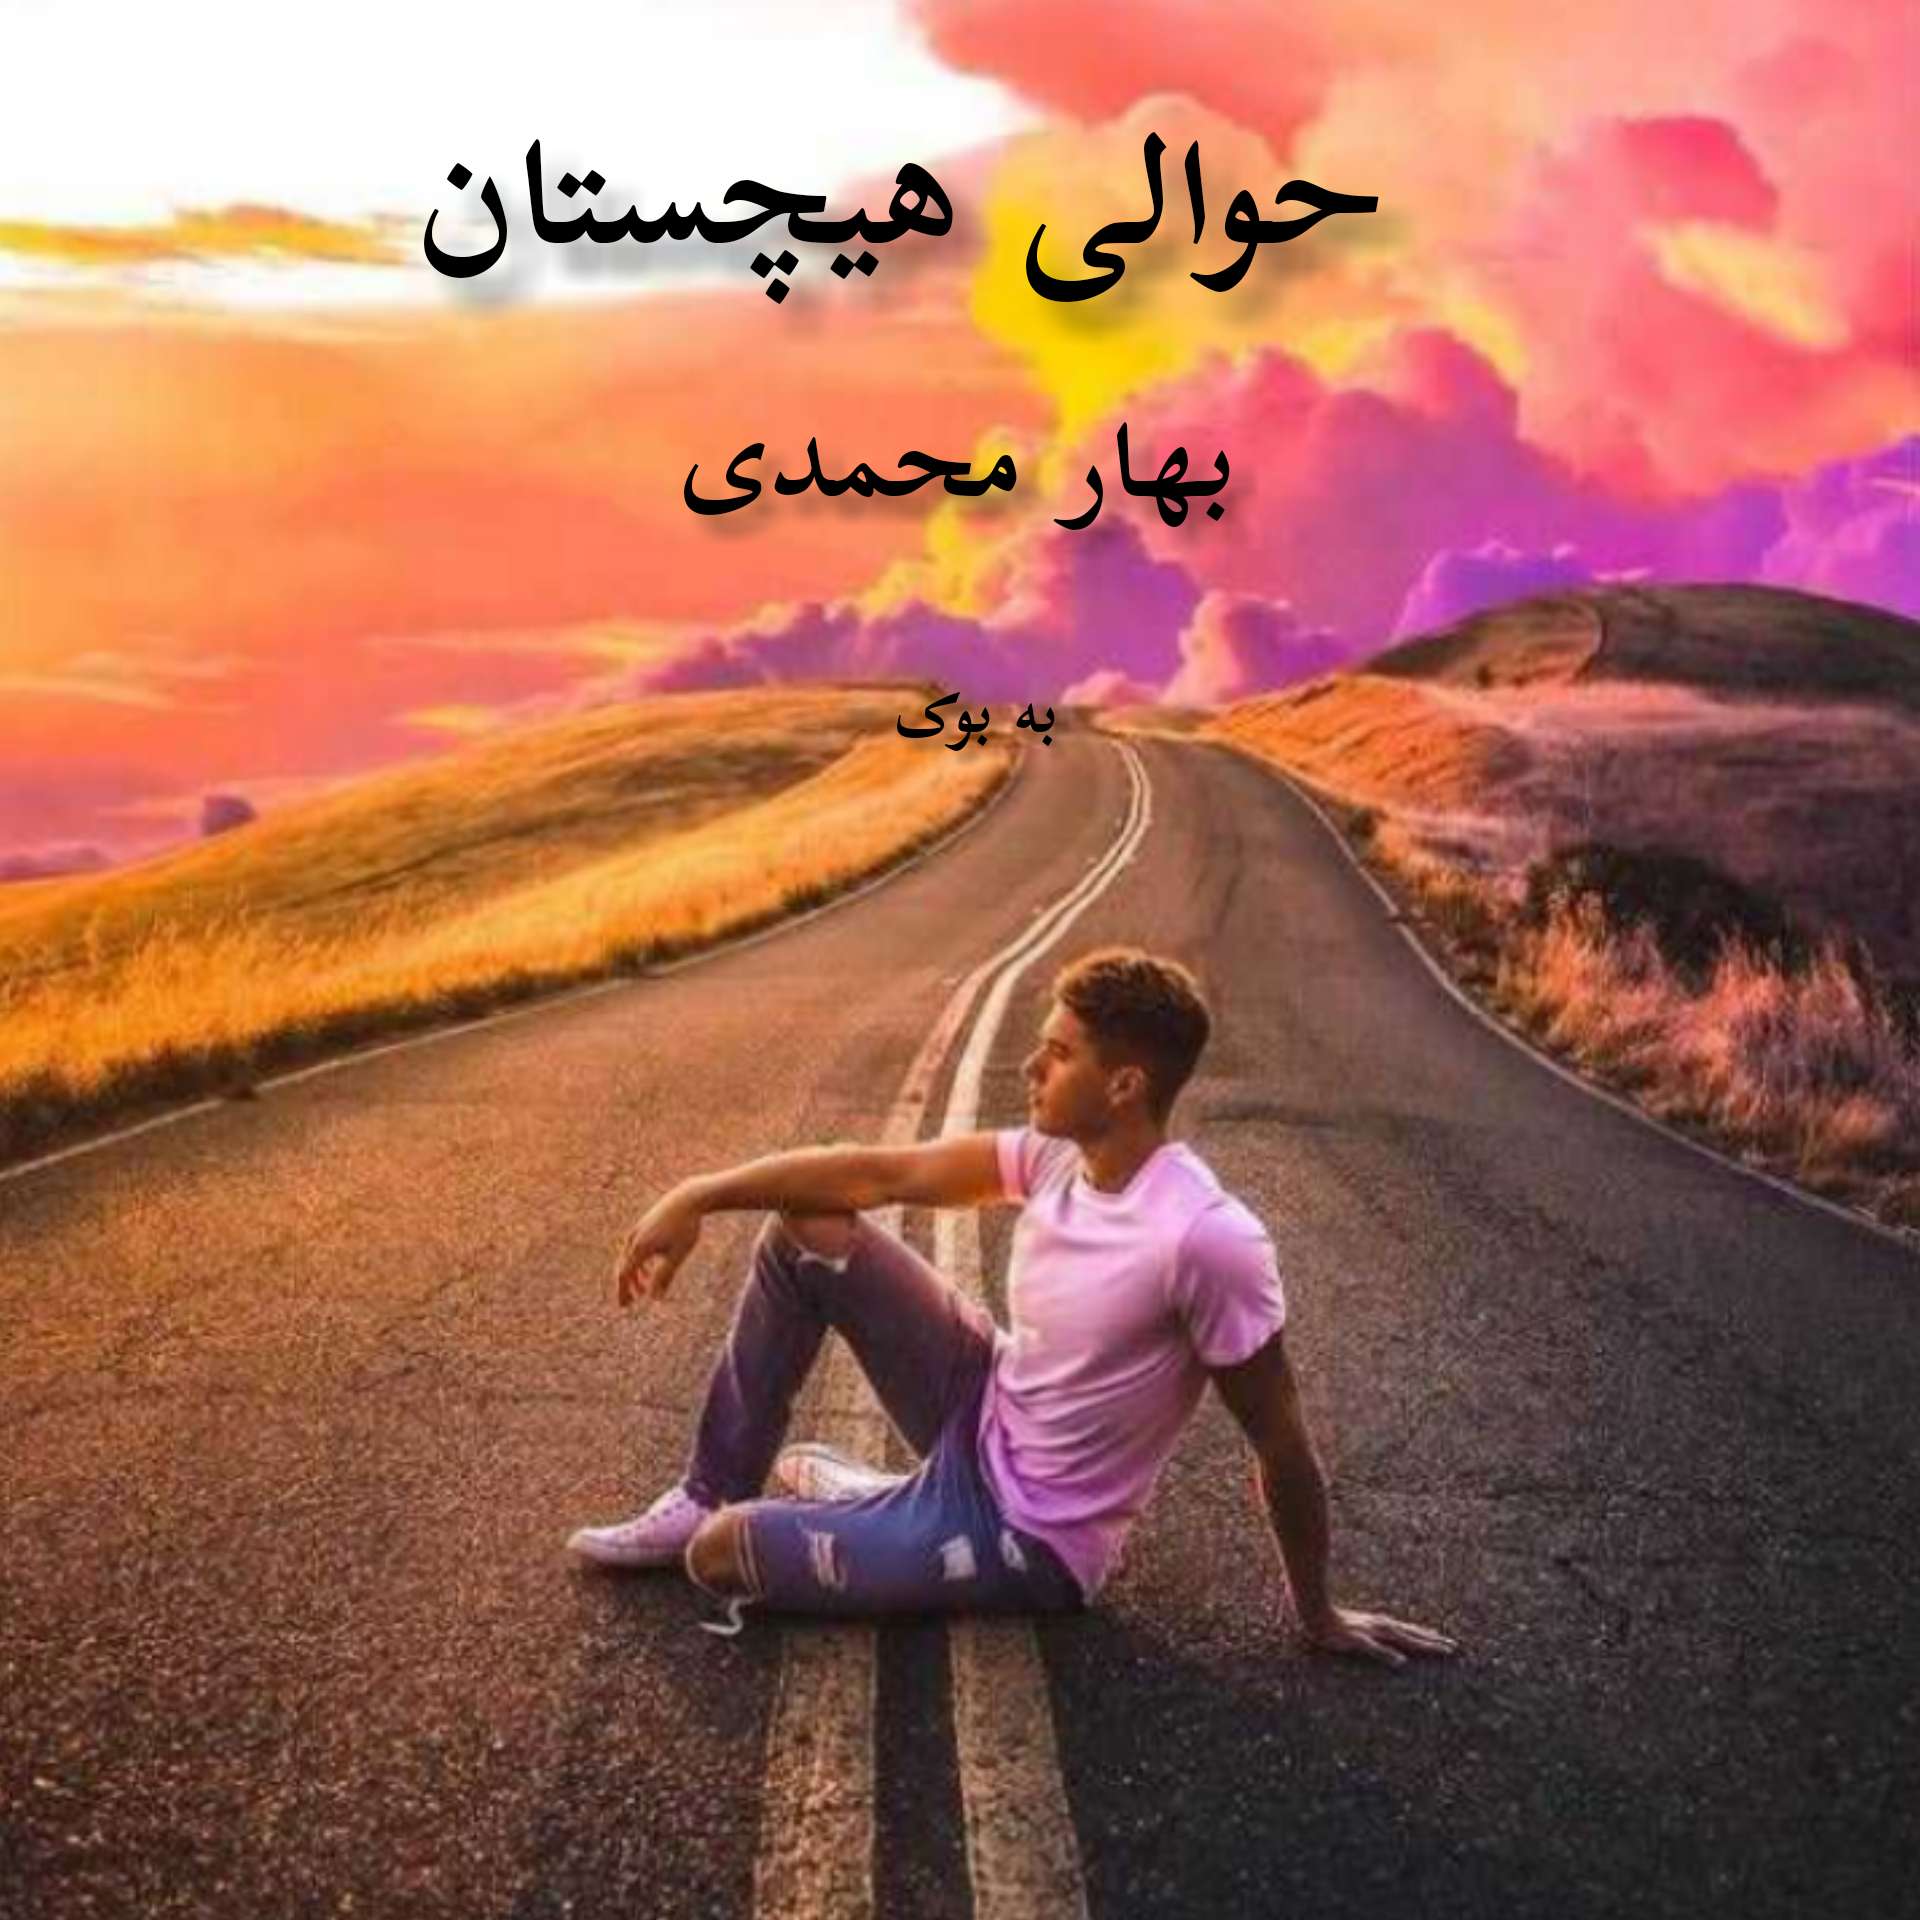 رمان حوالی هیچستان از بهار محمدی 31